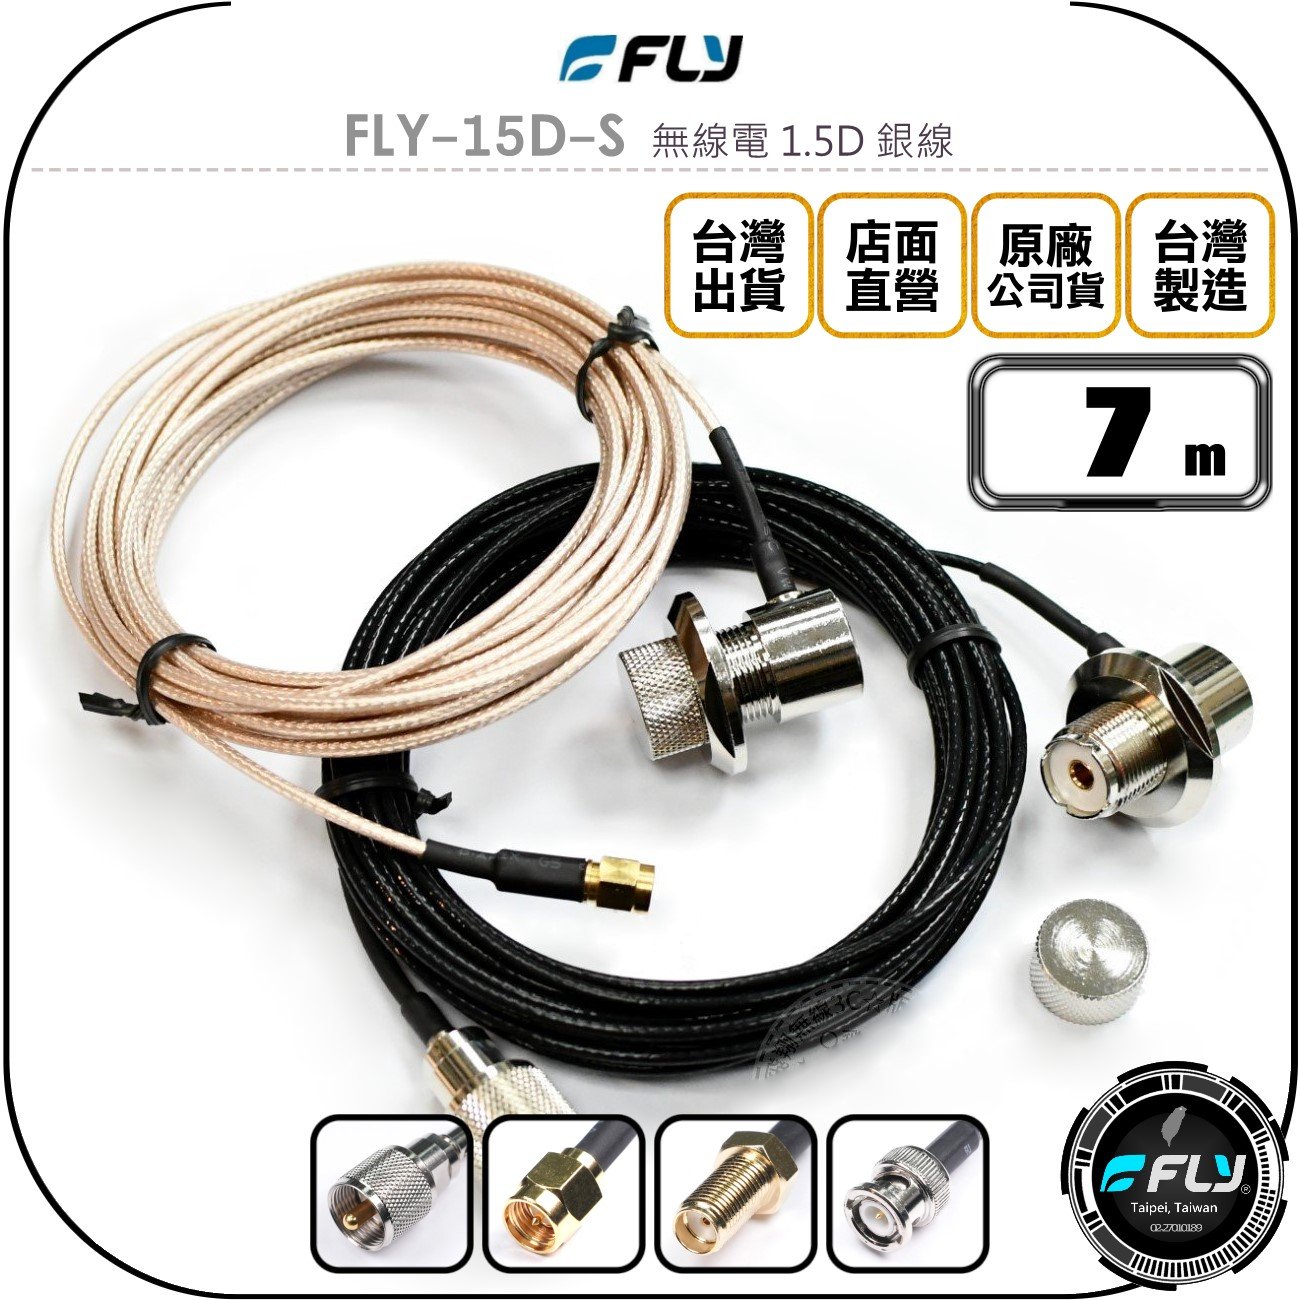 《飛翔無線3C》FLY FLY-15D-S 無線電 1.5D 銀線 7m◉公司貨◉訊號線◉對講機收發◉車機外接傳輸